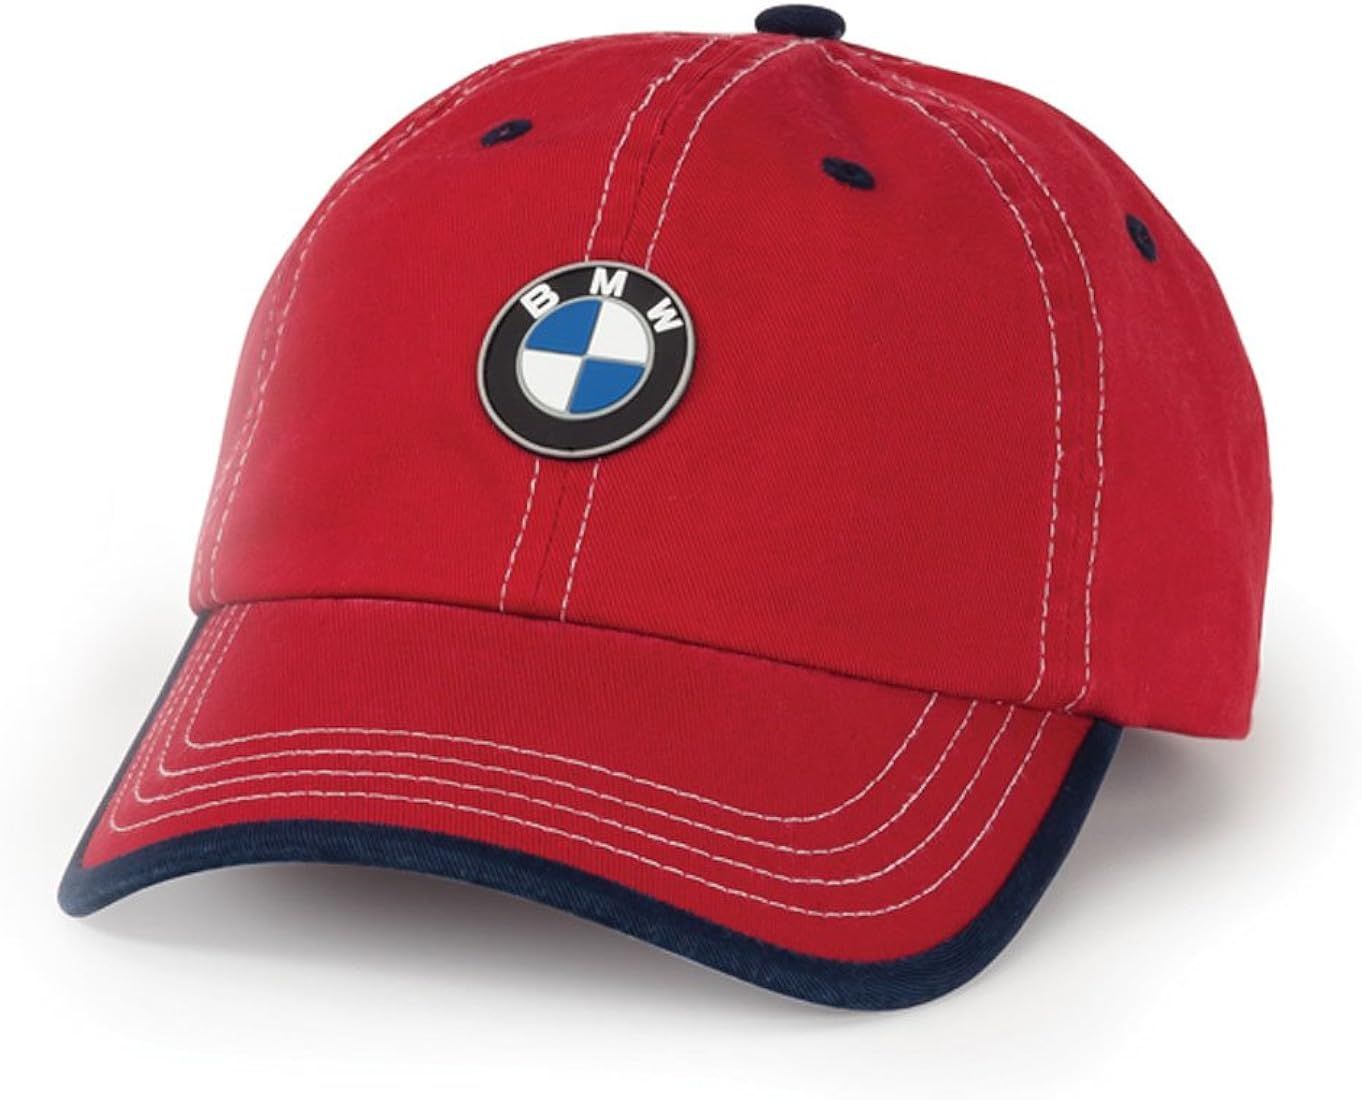 Genuine BMW Kids Child's Future Driver Chino Baseball Cap Hat - Red/Navy | Amazon (US)